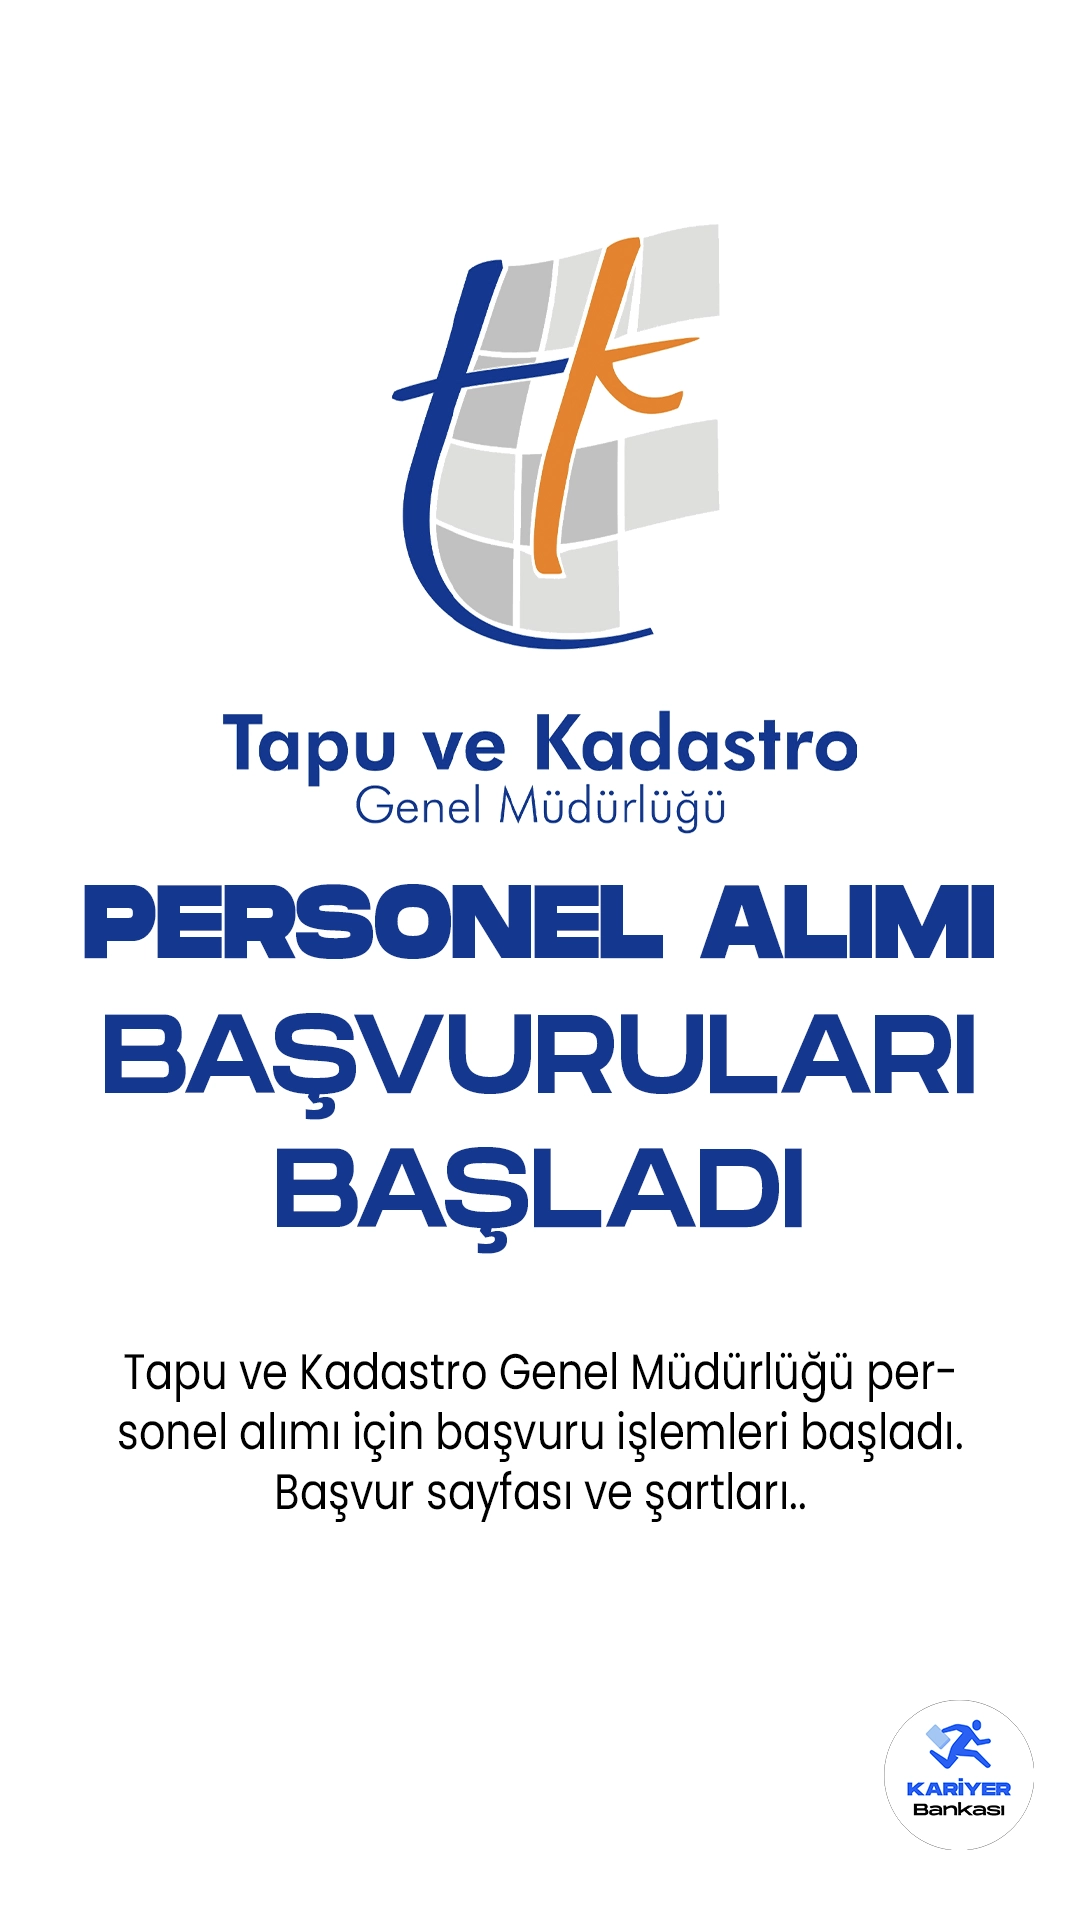 Tapu ve Kadastro Genel Müdürlüğü personel alımı için başvuru işlemleri başladı. İlgili alım duyurusunda, Tapu ve Kadastro'ya 202 sözleşmeli personel alımı yapılacağı aktarılırken, başvuru yapacak adayların genel ve özel şartları dikkatli incelemesi gerektiği kaydedildi.